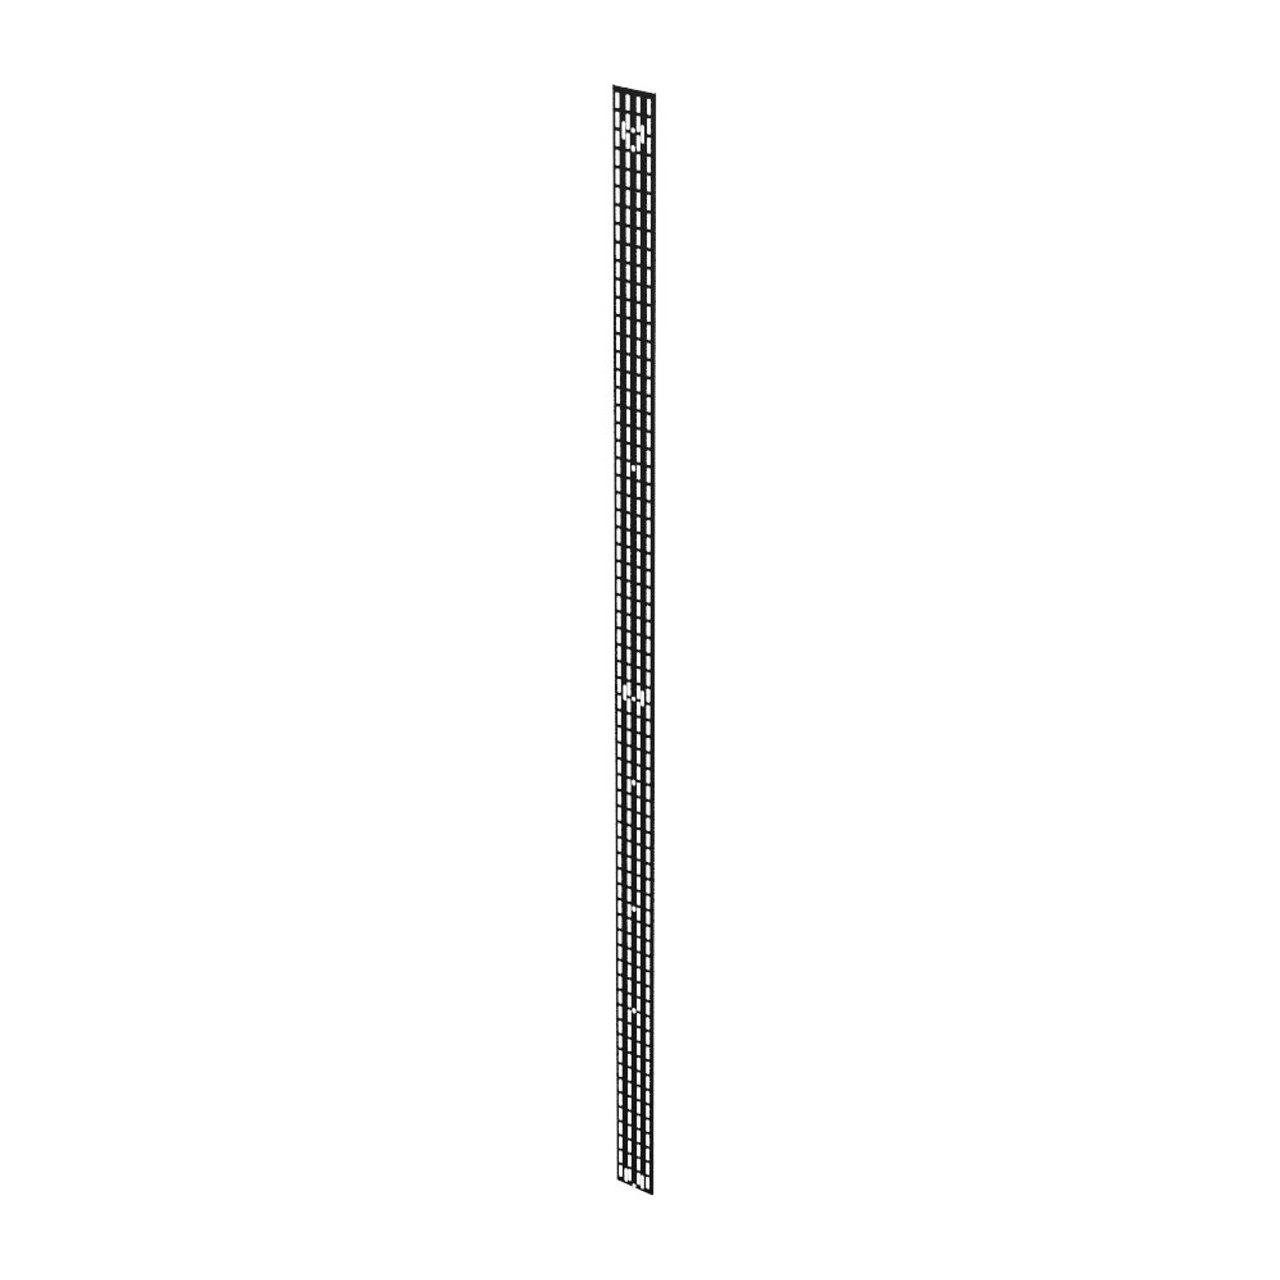 48U Vertical Cable Management Rail, Rack Mount, 0.26 x 3.5 x 86.5